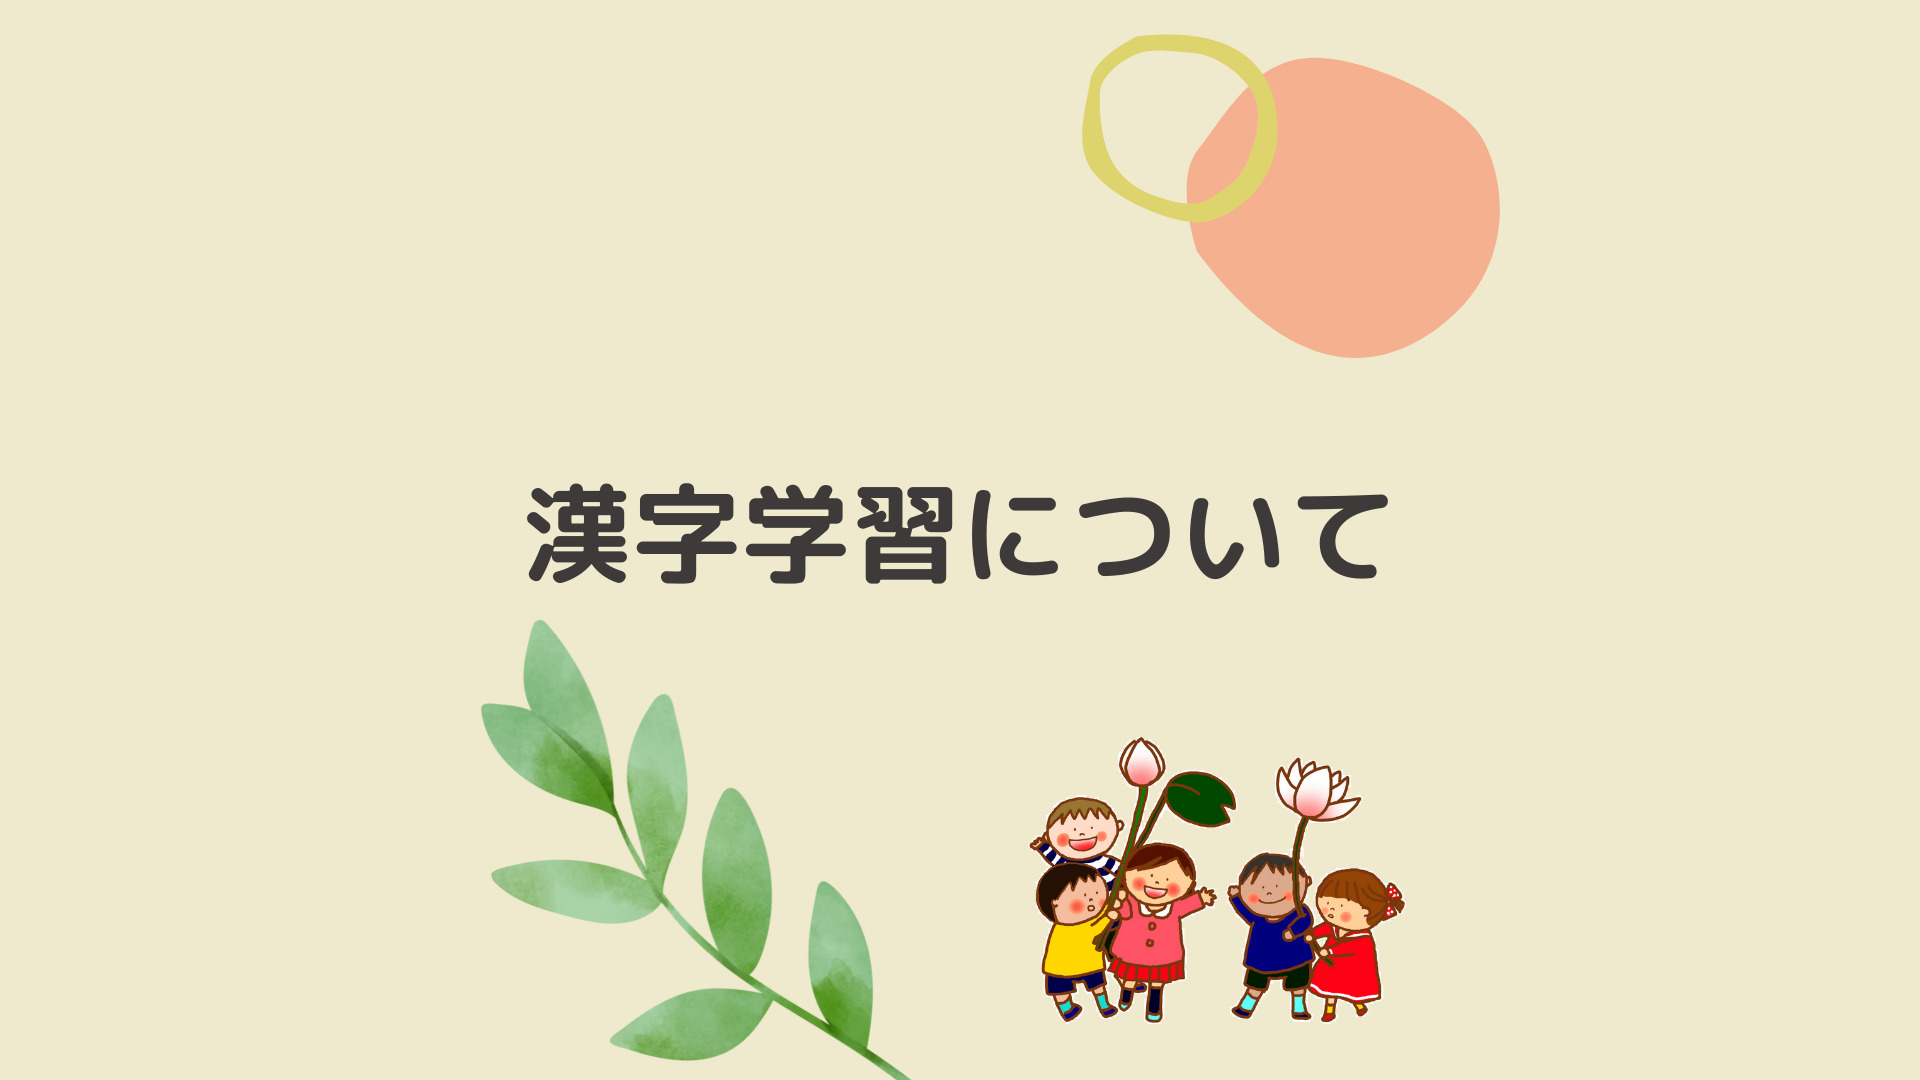 海外での漢字学習 日本の子どもたちと同じように勉強しないといけないの 日本につながる子どもたちへの継承語教育